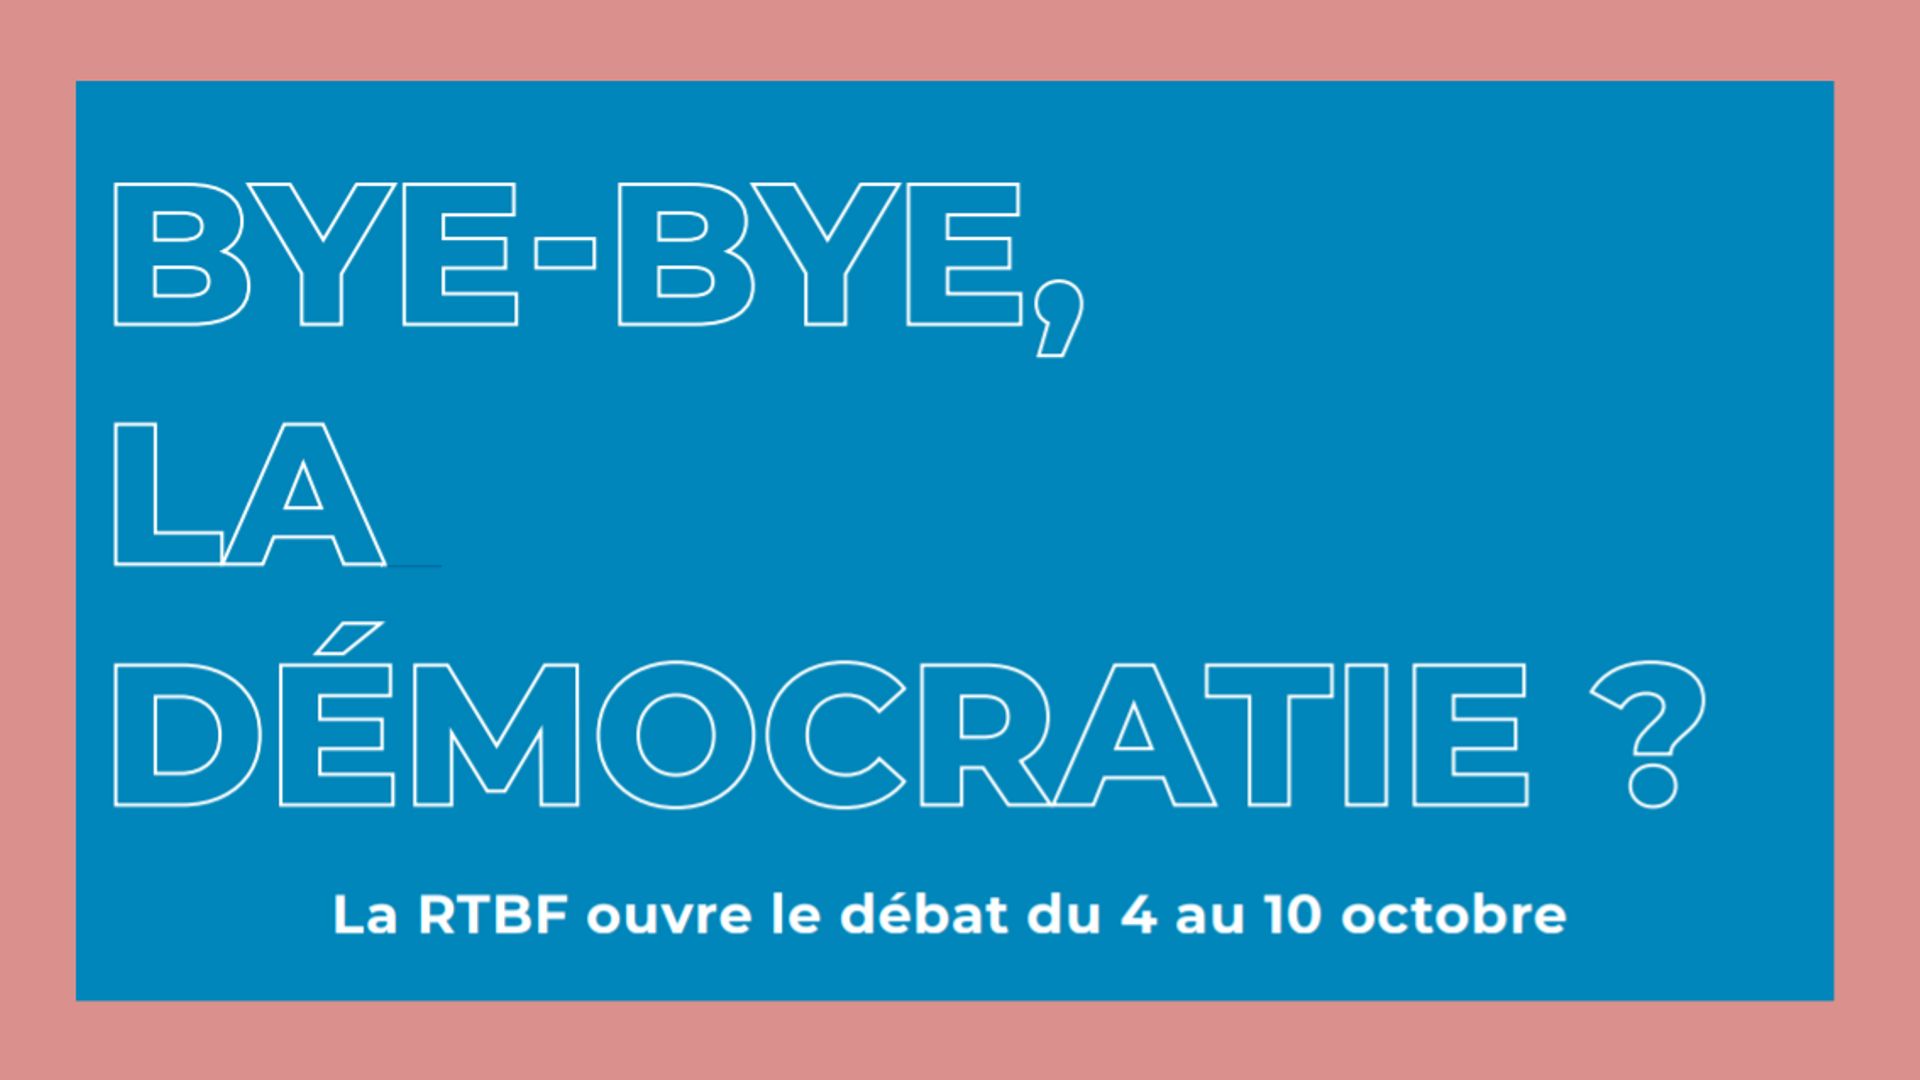 Notre démocratie est-elle en danger ? : la RTBF ouvre le débat en cette première semaine d’octobre